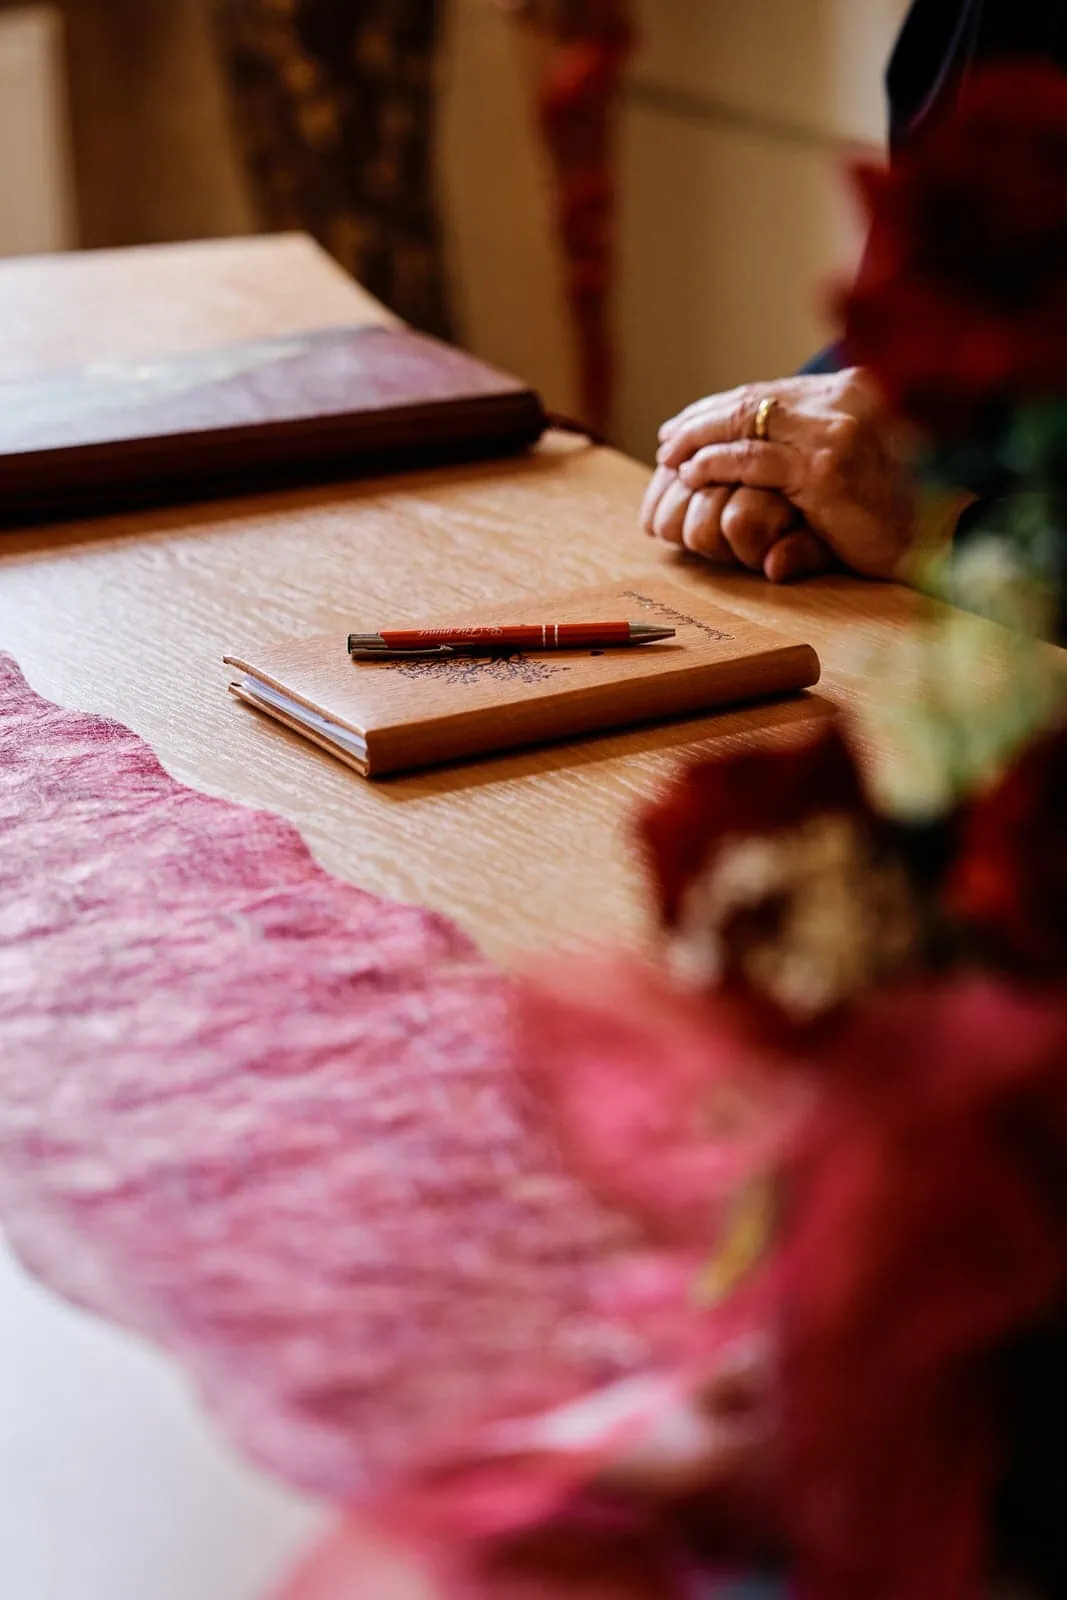 Die Hände des Trauredner liegen locker auf dem Tisch, vor ihm liegt das Stammbuch und der Kugelschreiber bereit für das Hochzeitspaar.